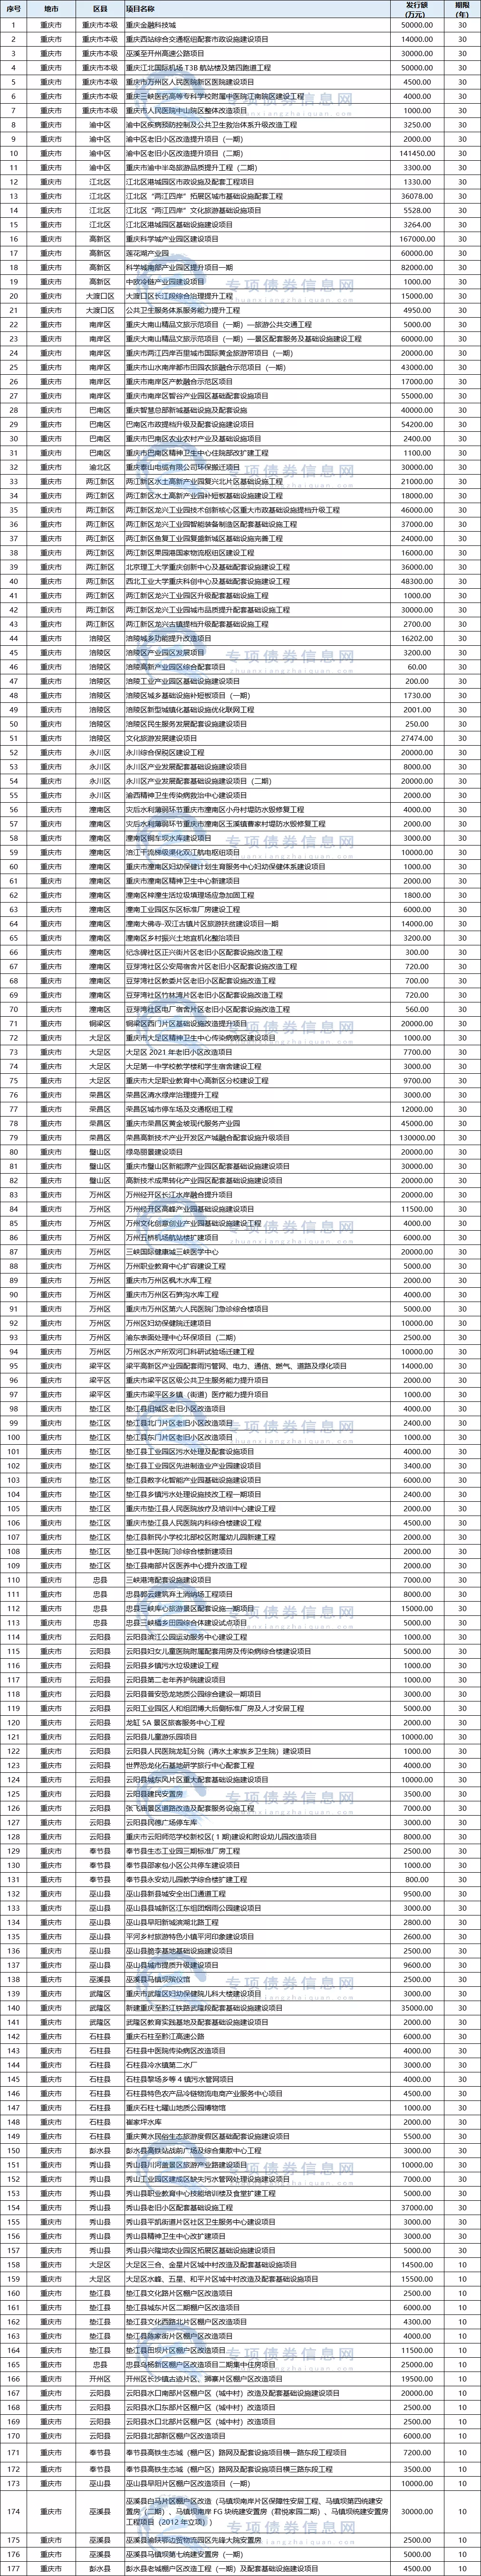 重庆市本批次拟发行新增专项债券项目清单